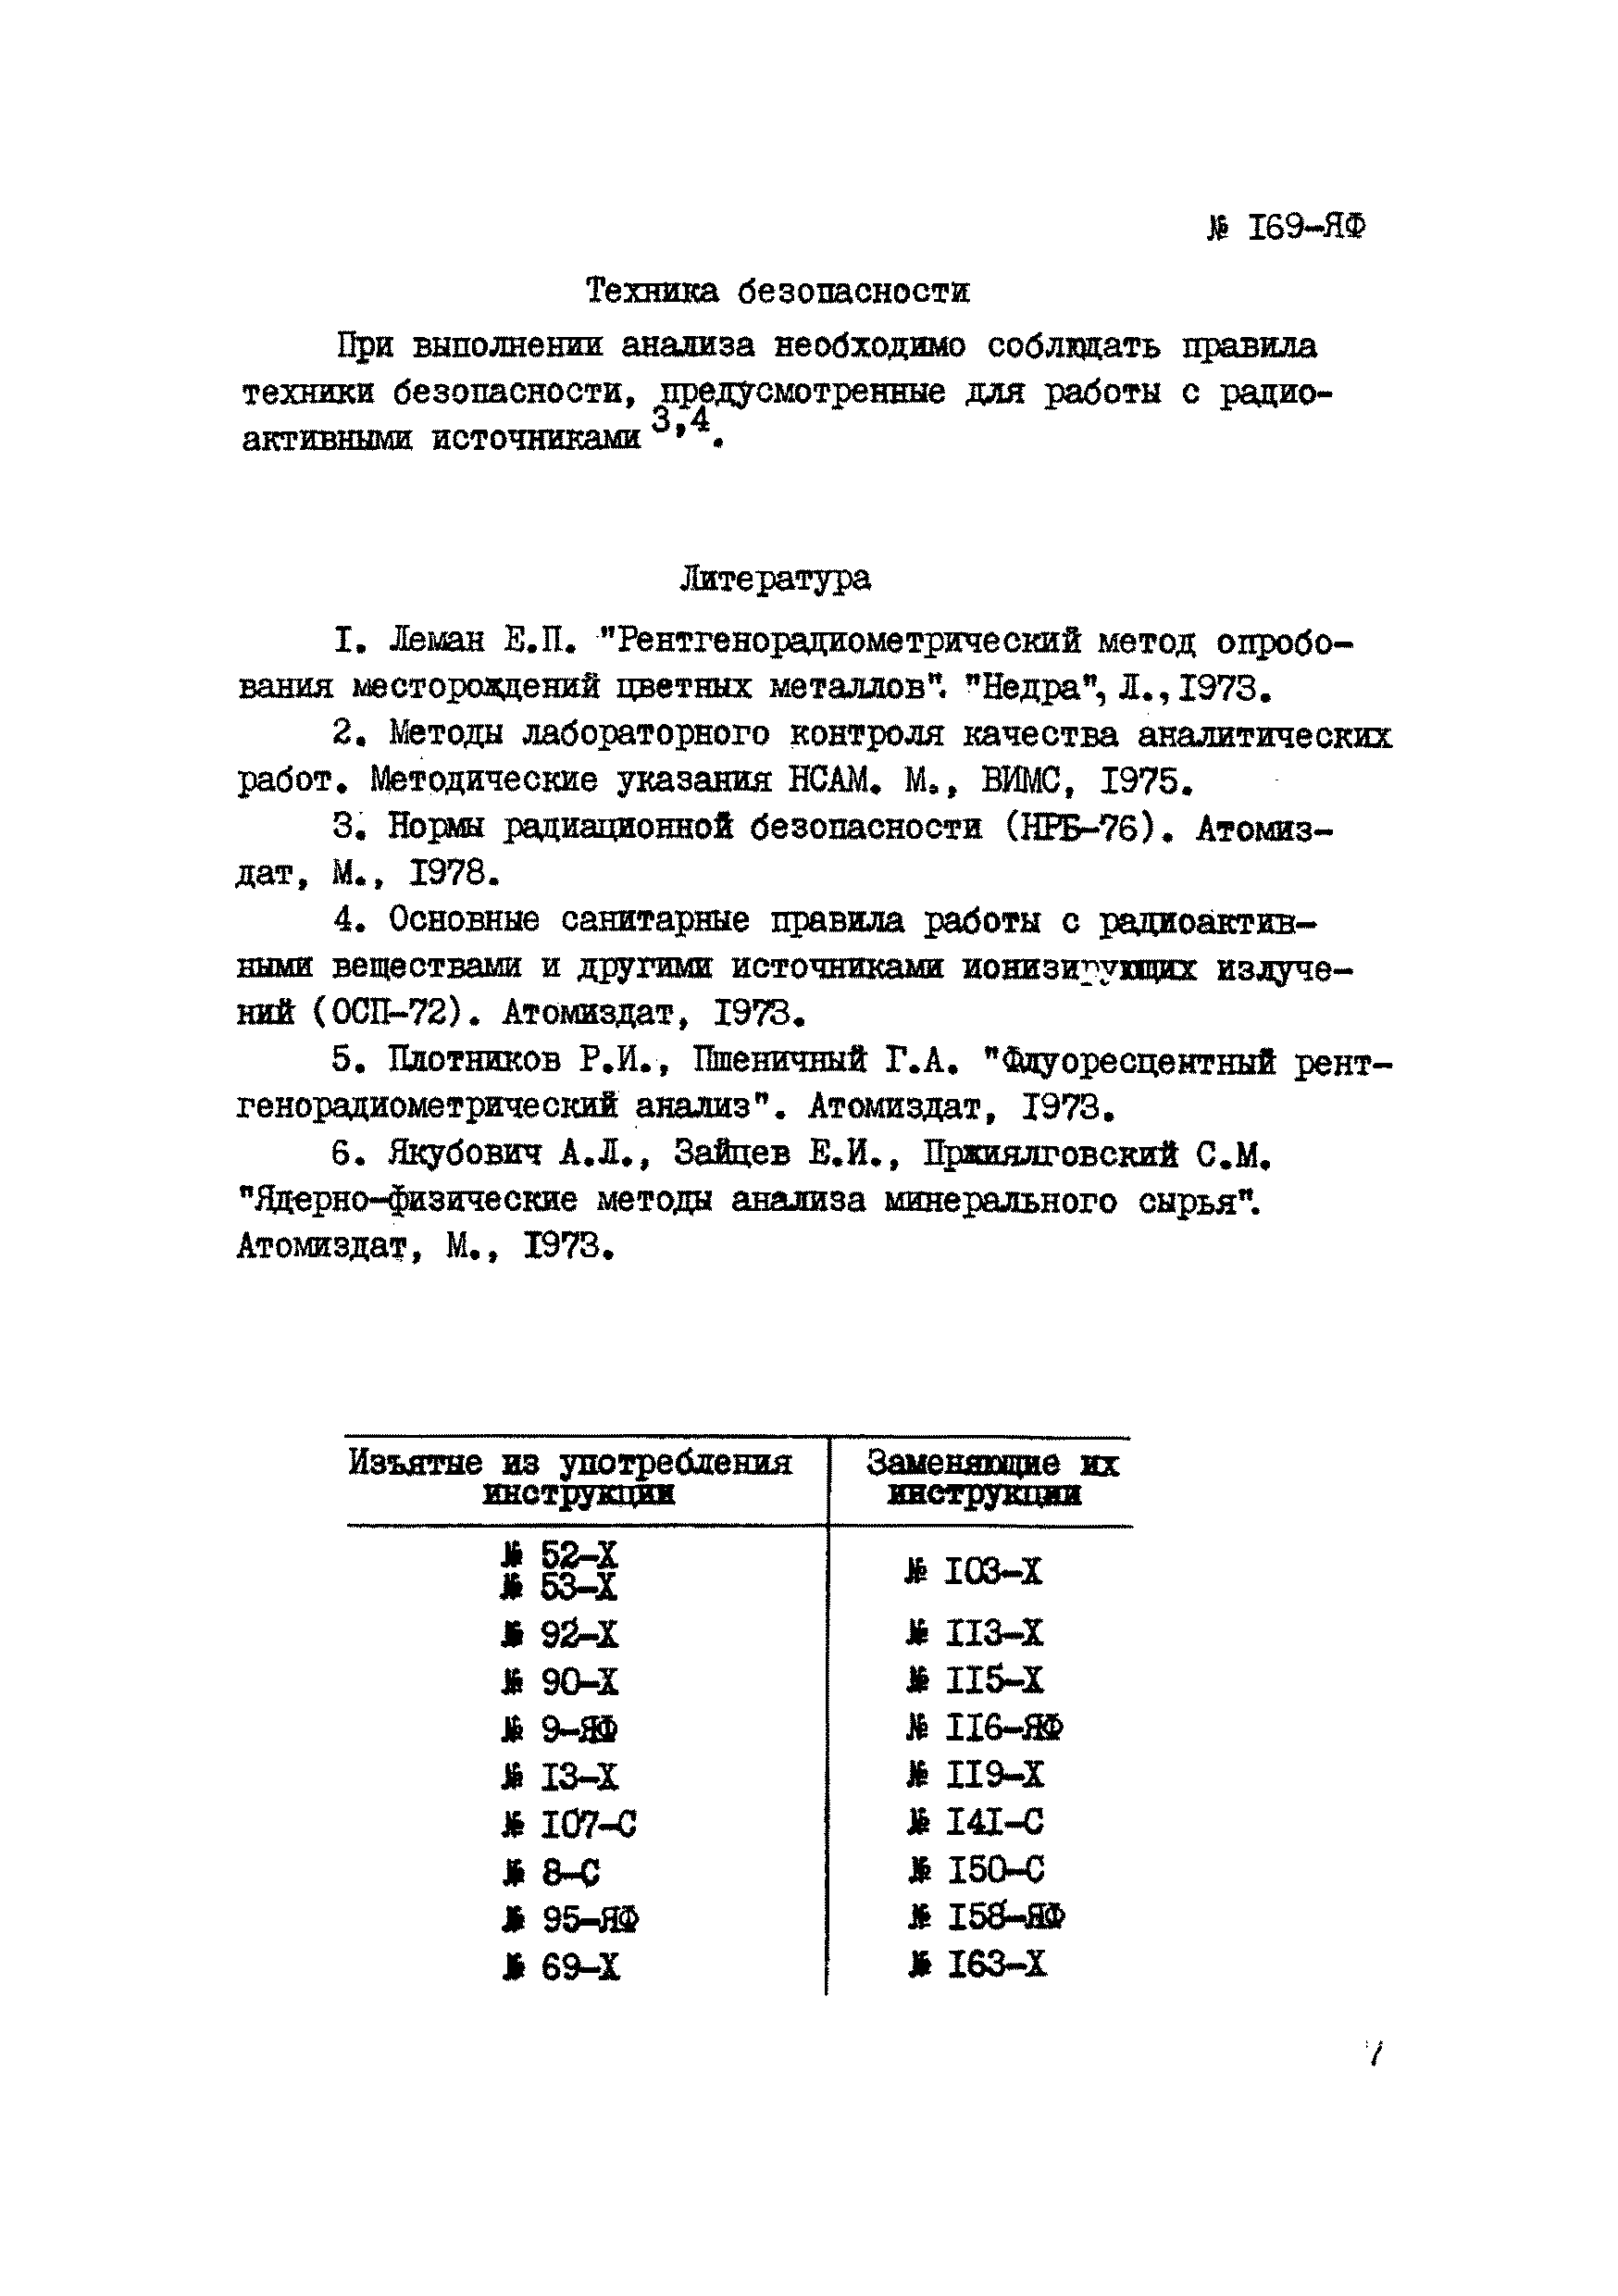 Инструкция НСАМ 169-ЯФ